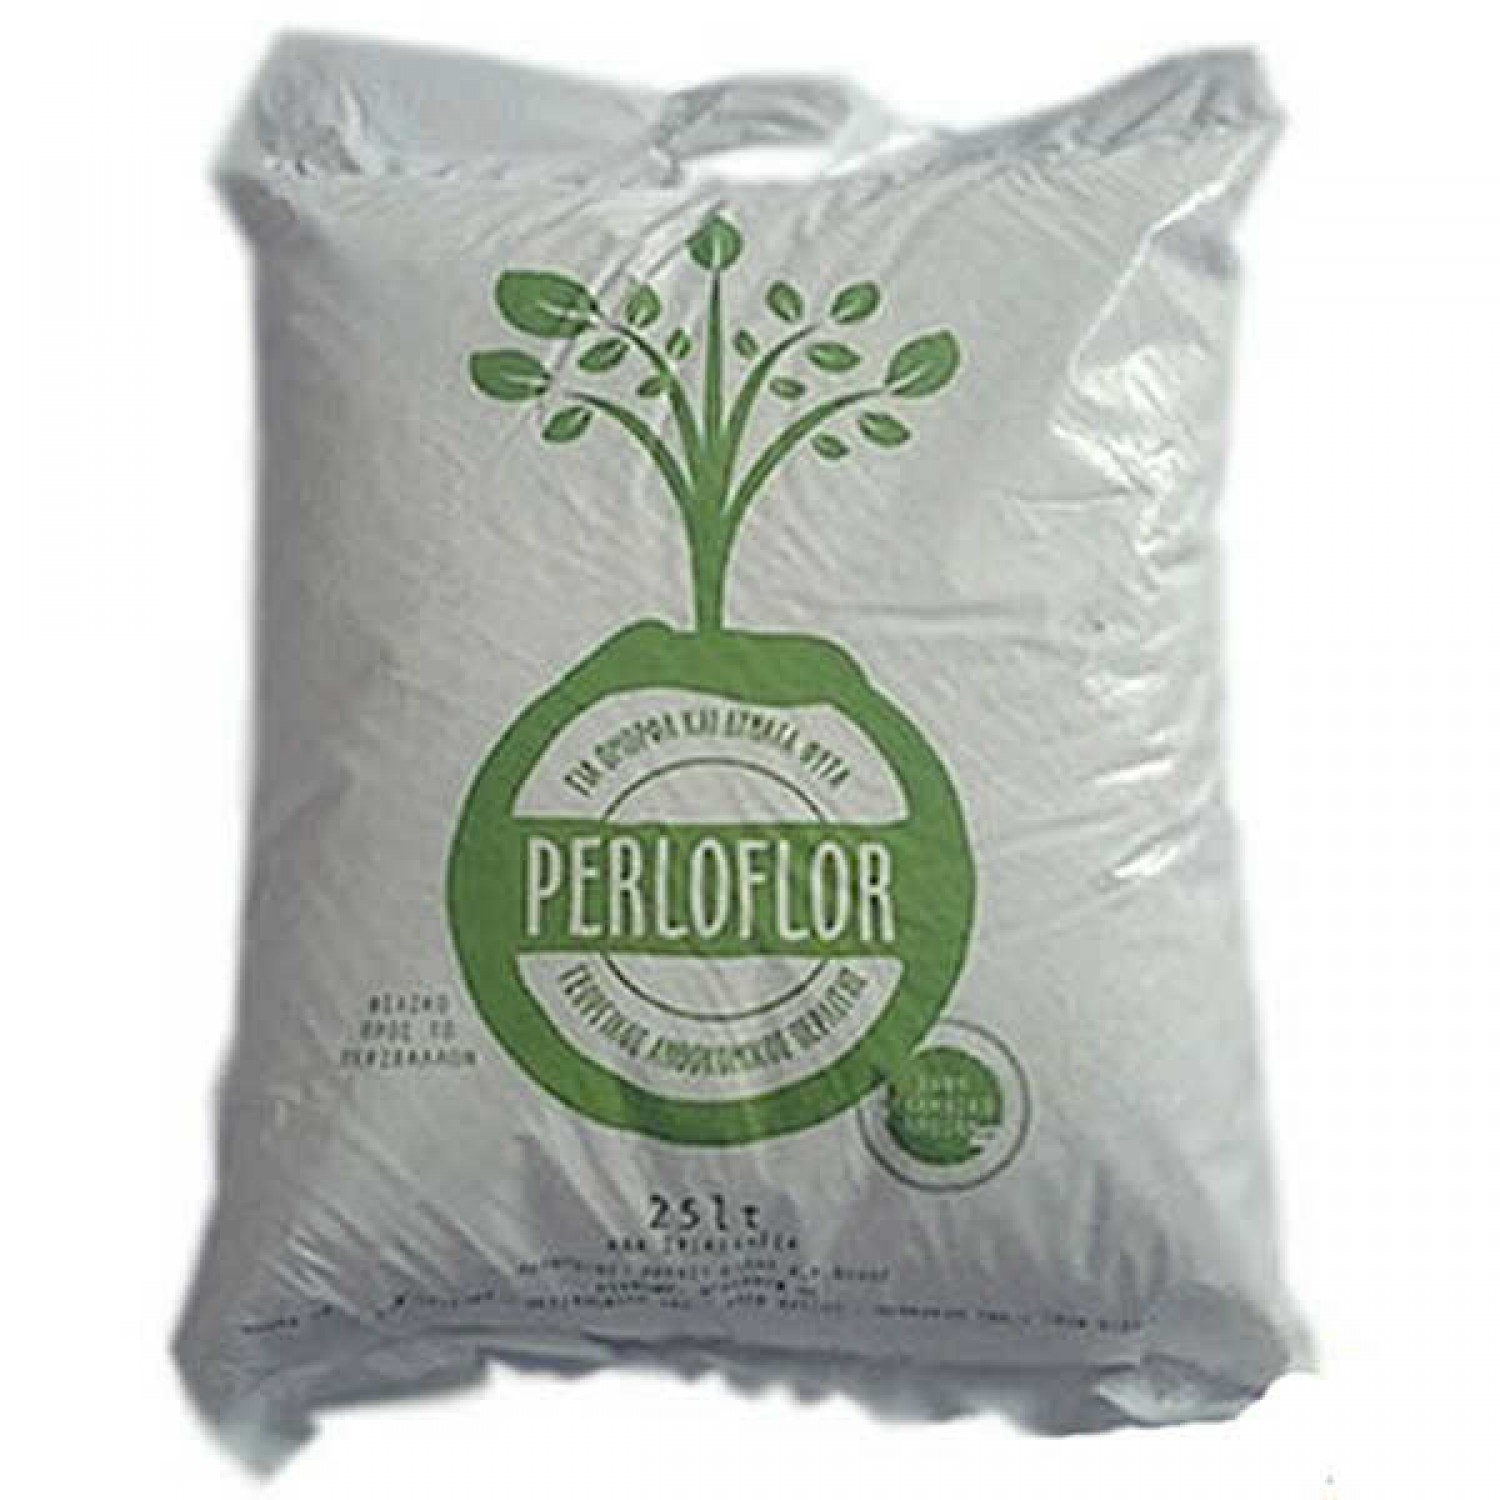 Perlite Perloflor 25lt for Agricultural & Horticultural Use